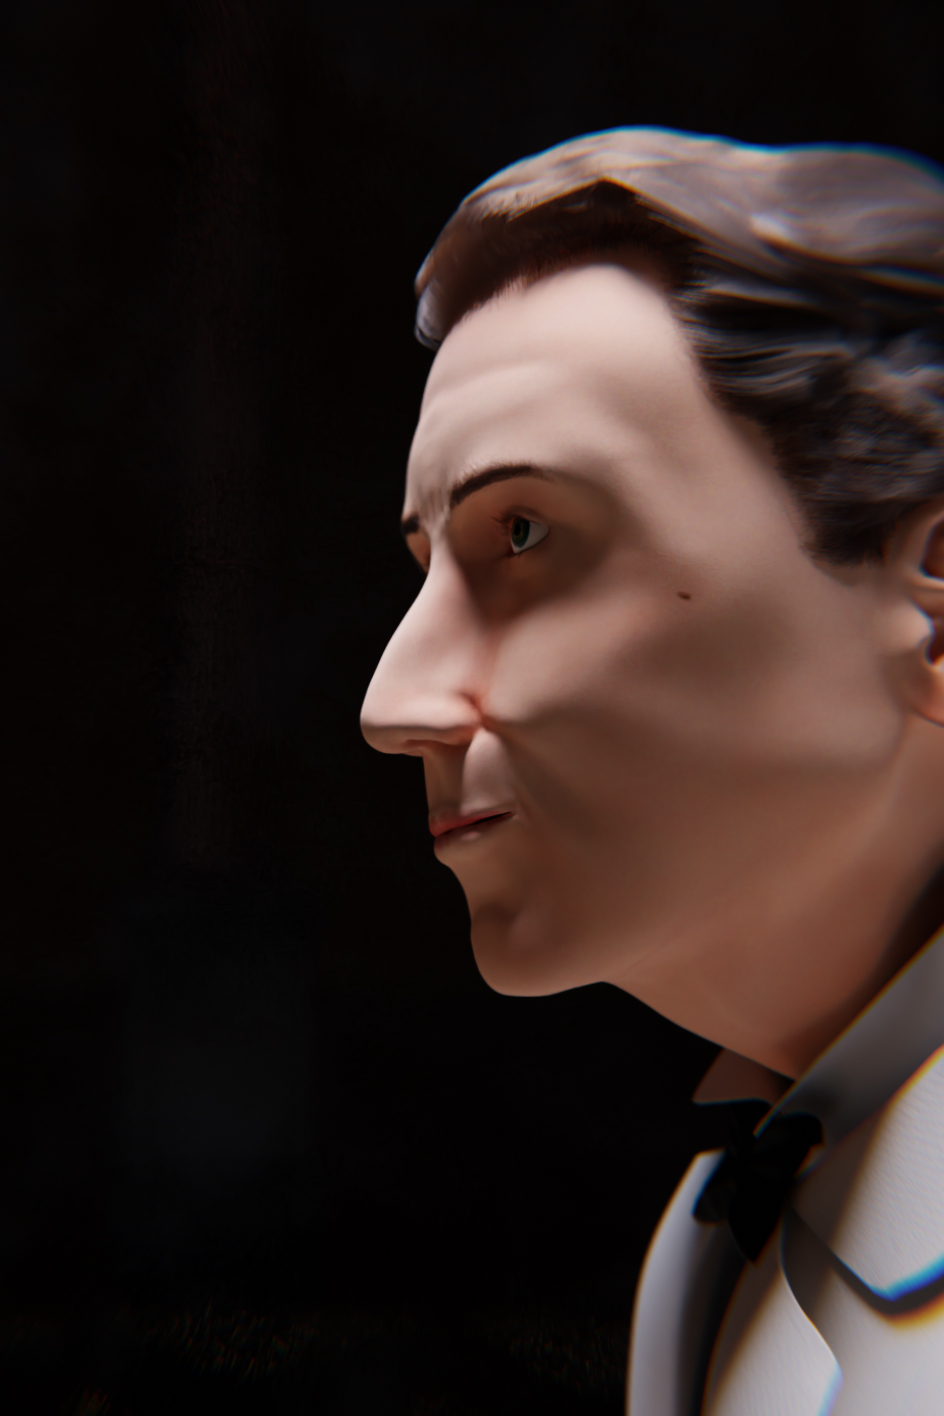 Novecento, il pianista sull'Oceano, in una reinterpretazione 3D ispirata al personaggio caratterizzato da Tim Roth nel film di Giuseppe Tornatore